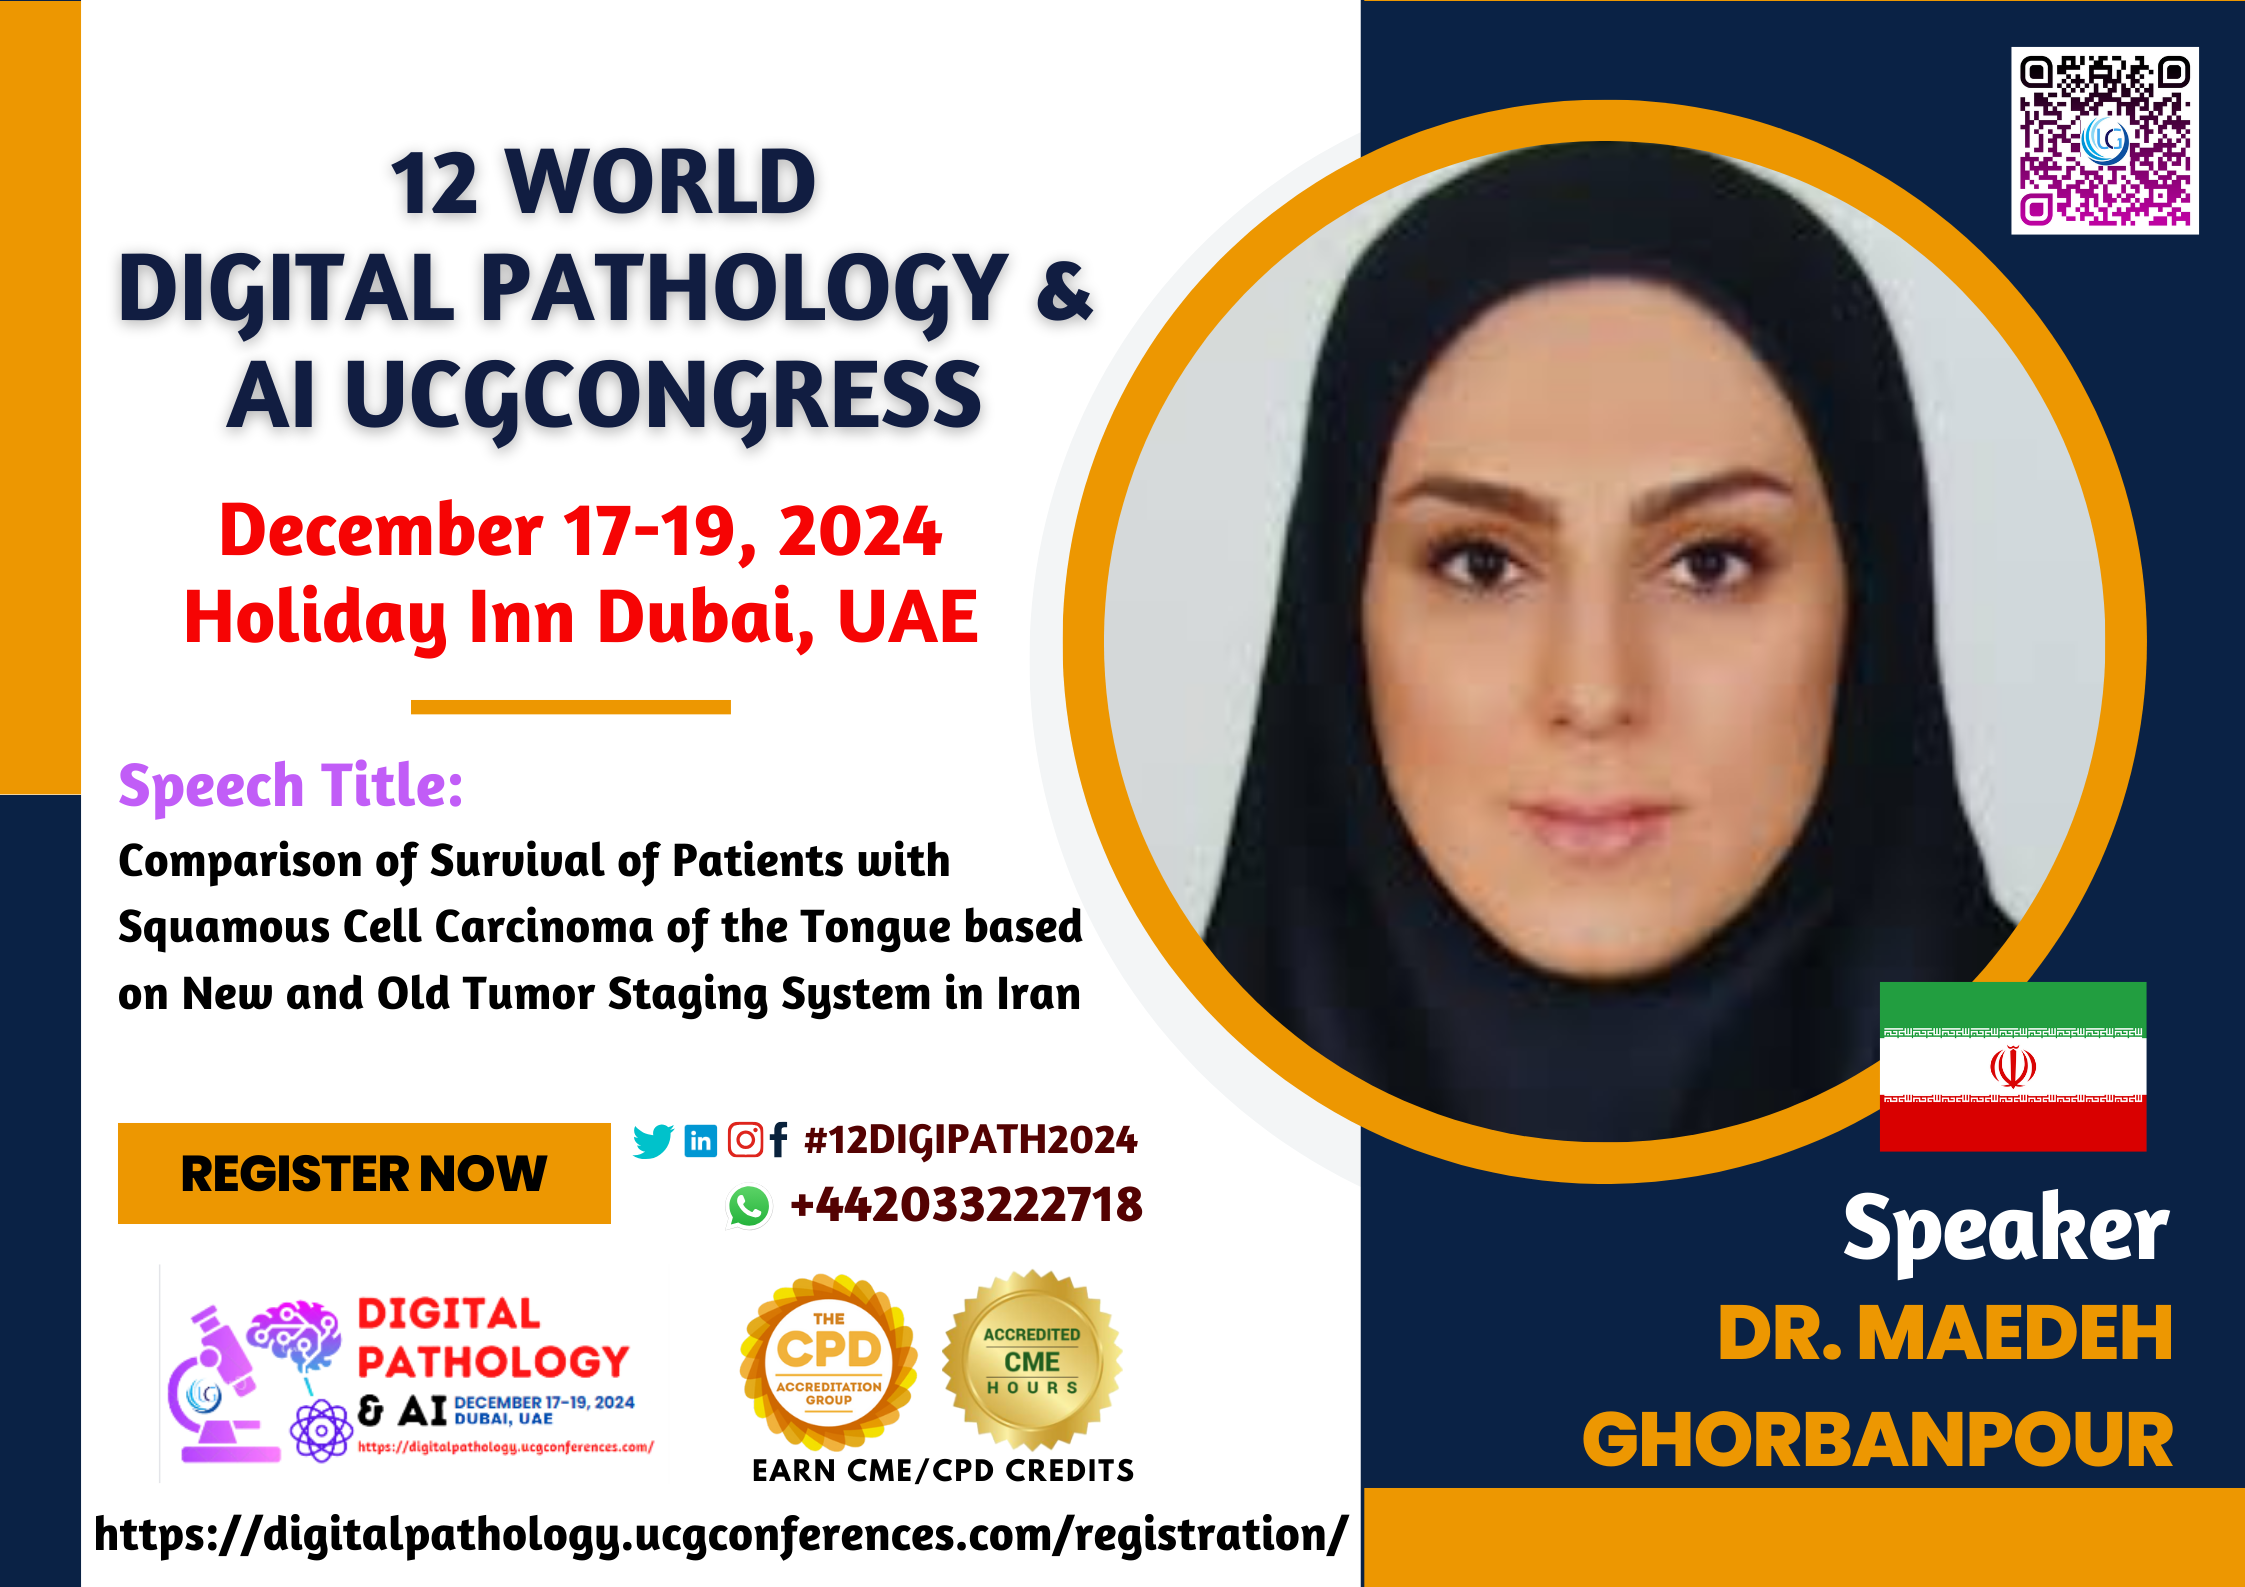 Dr. Maedeh Ghorbanpour_12 World Digital Pathology & AI UCGCongress